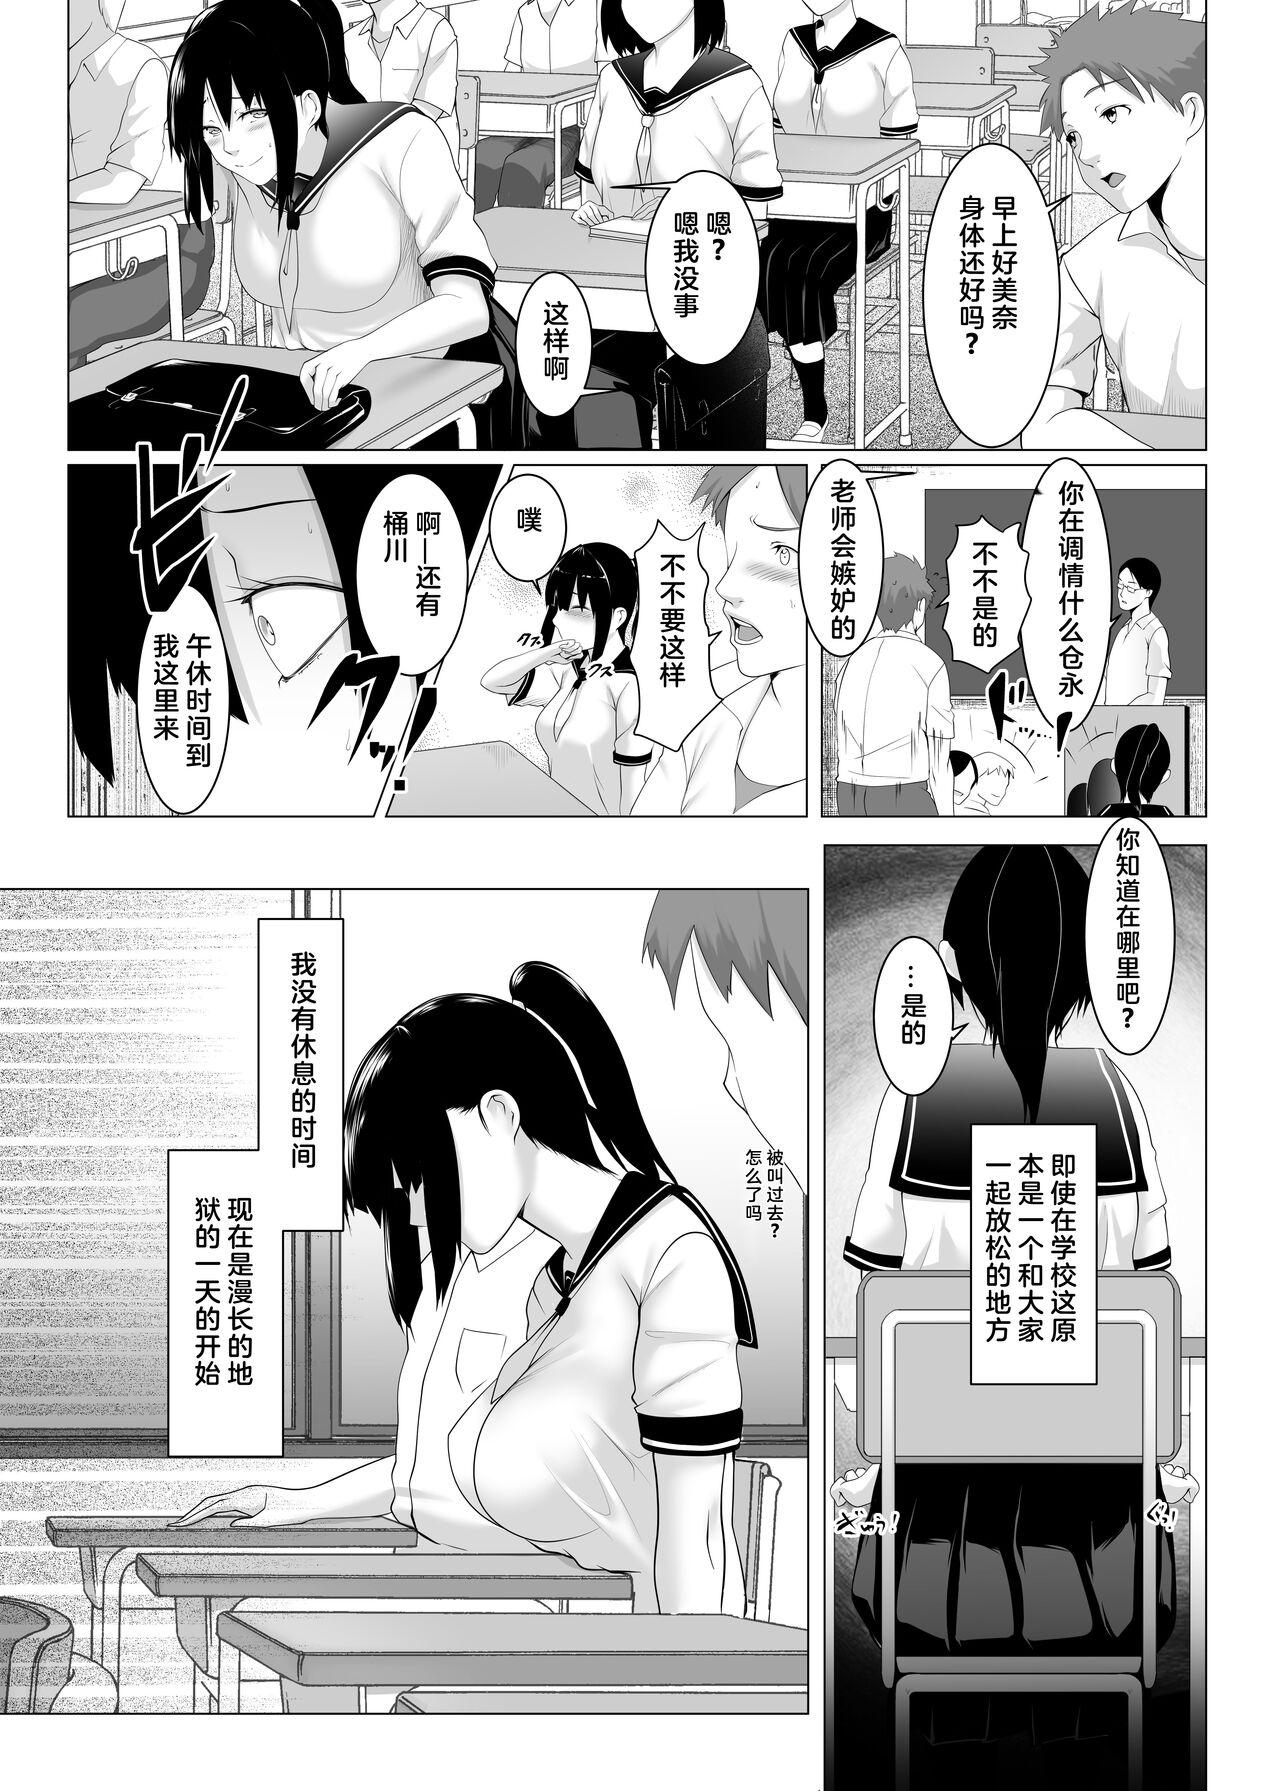 Ffm Haramase no Shima 2 - Original Blowjob Porn - Page 9